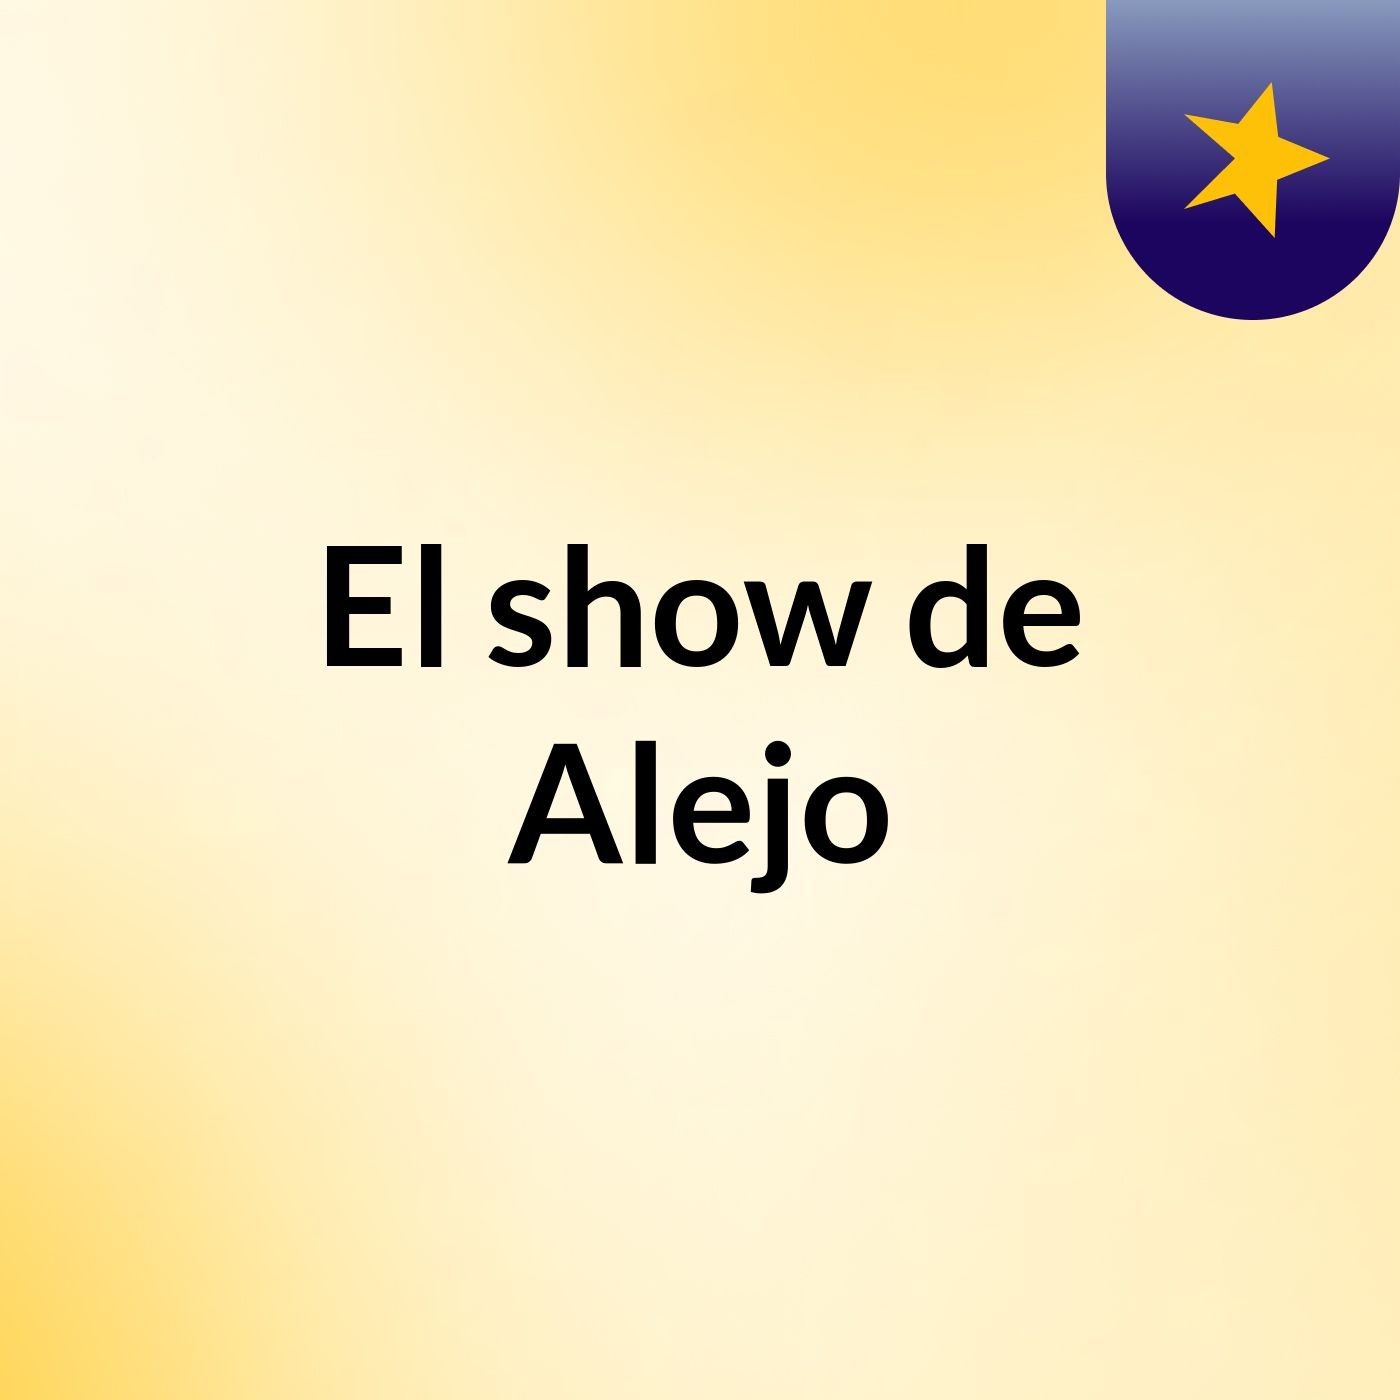 El show de Alejo